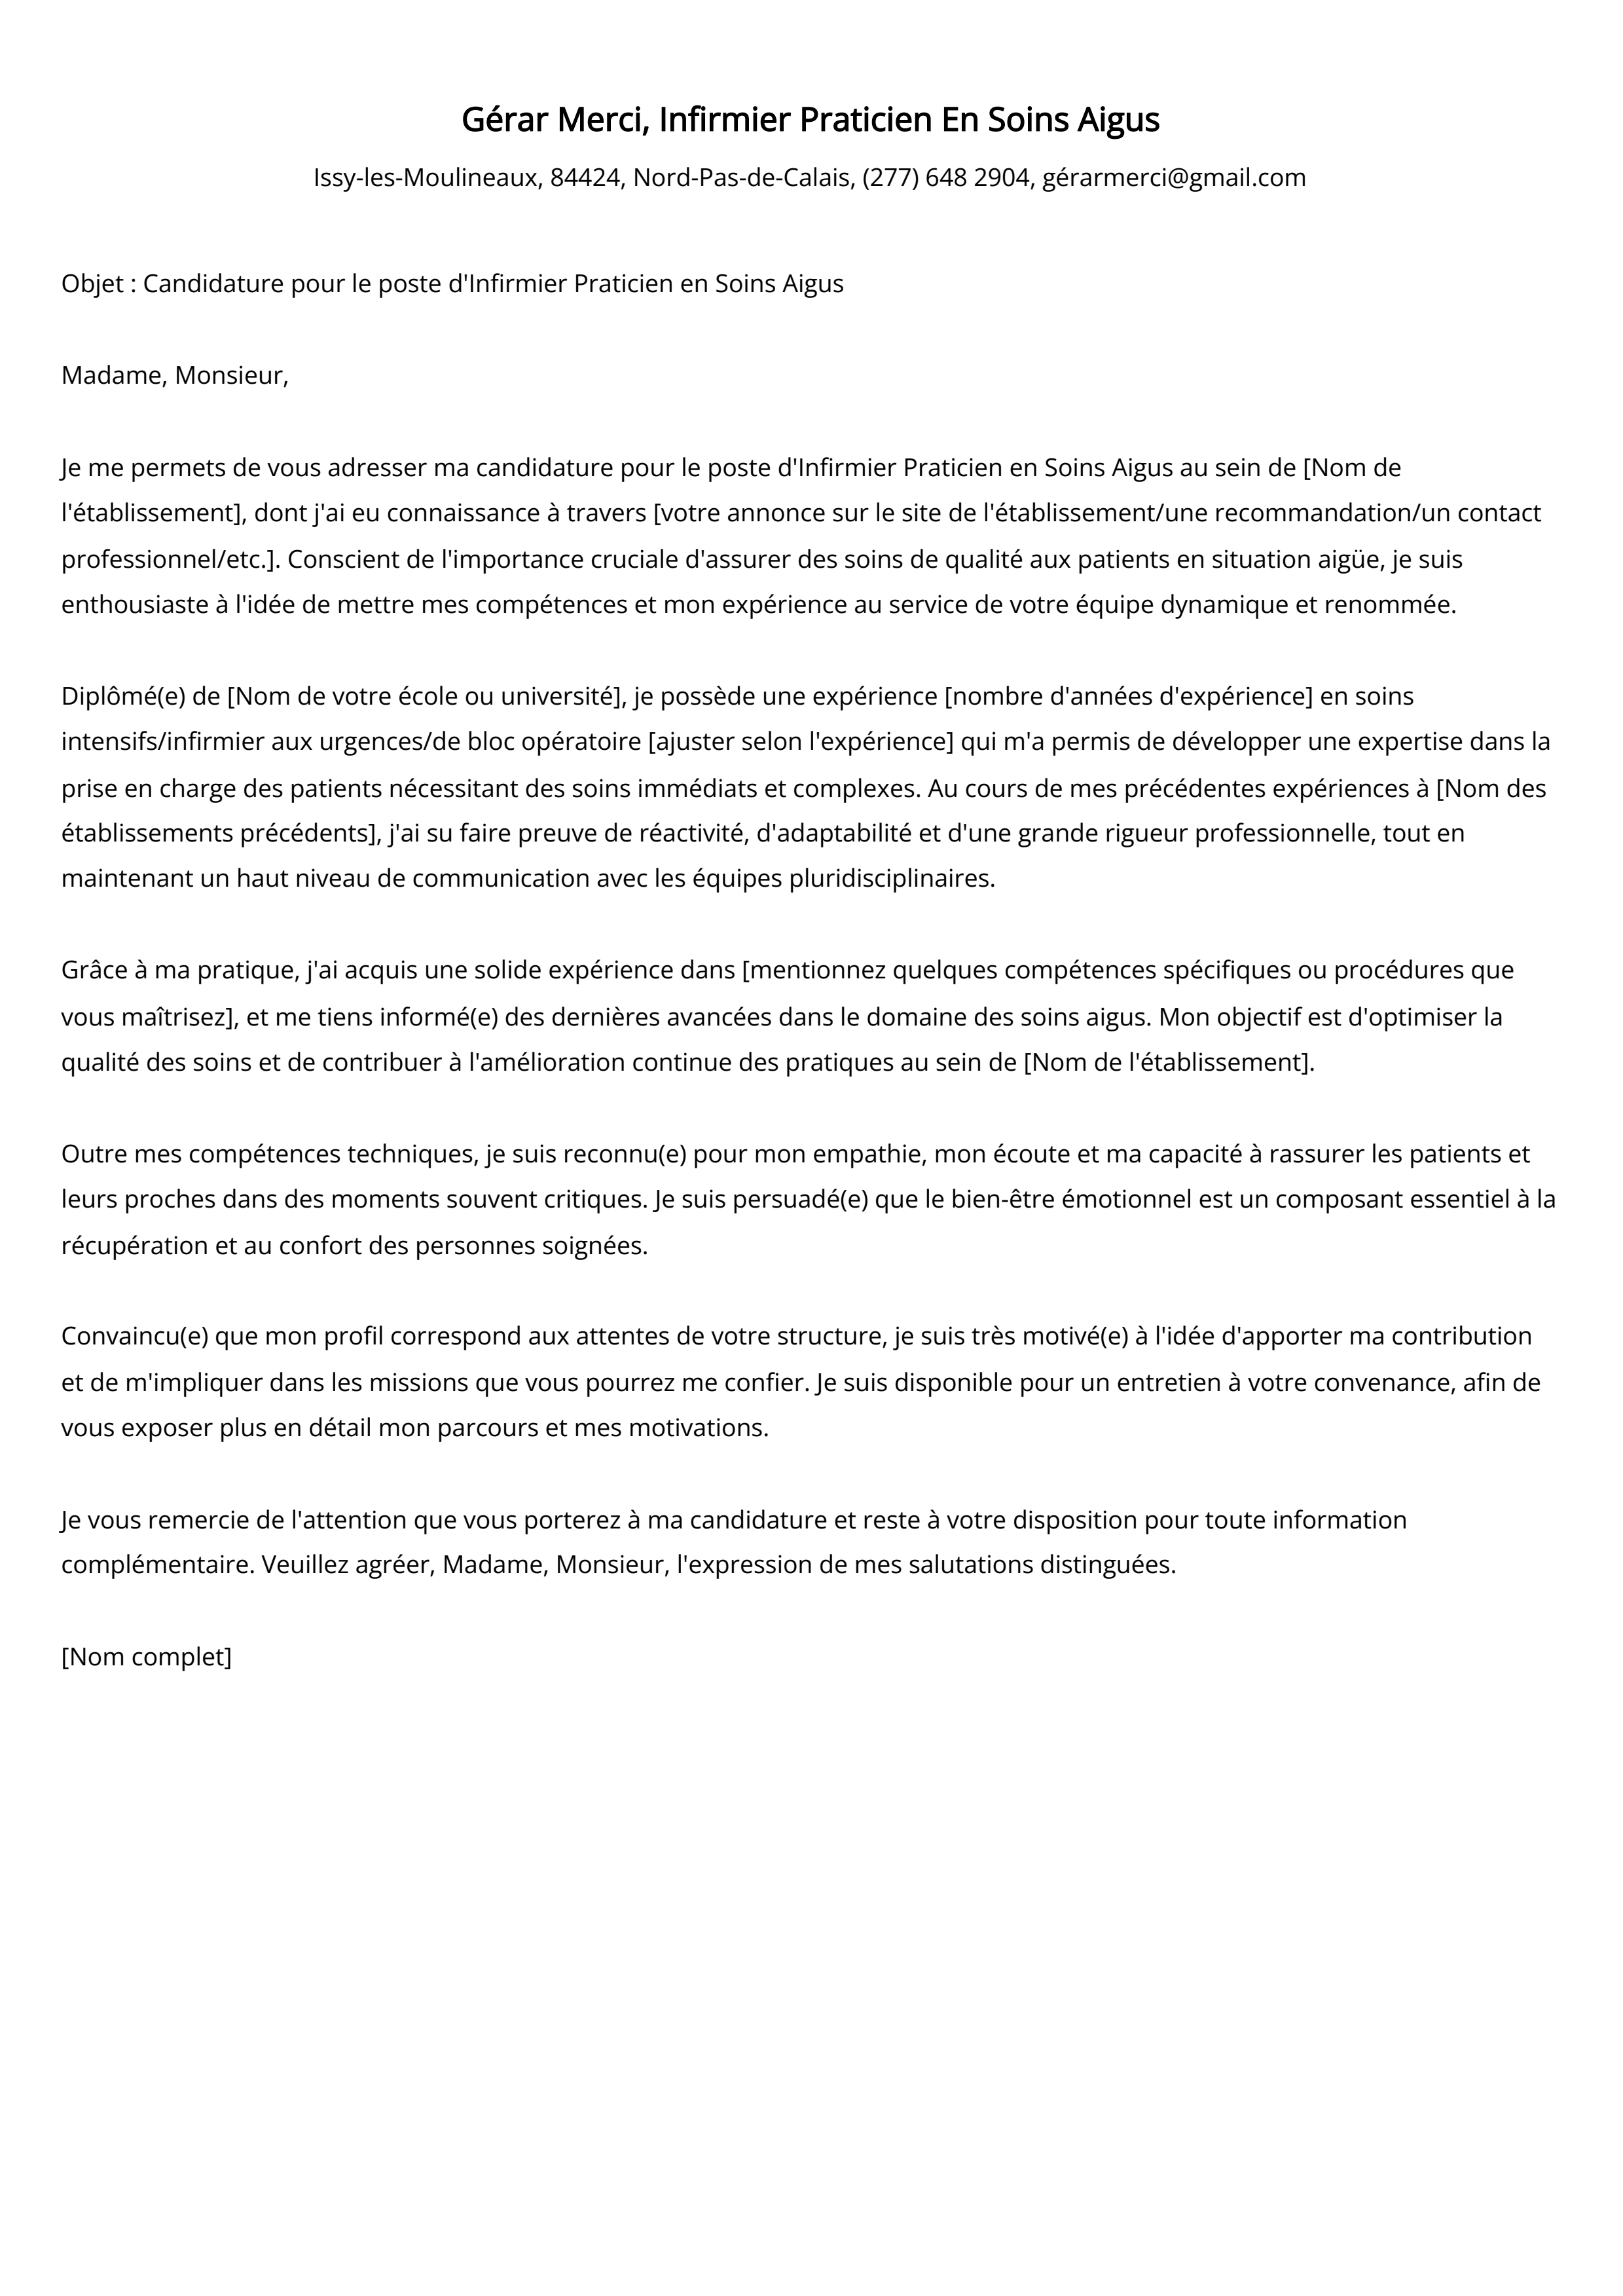 Infirmier Praticien En Soins Aigus Cover Letter Example